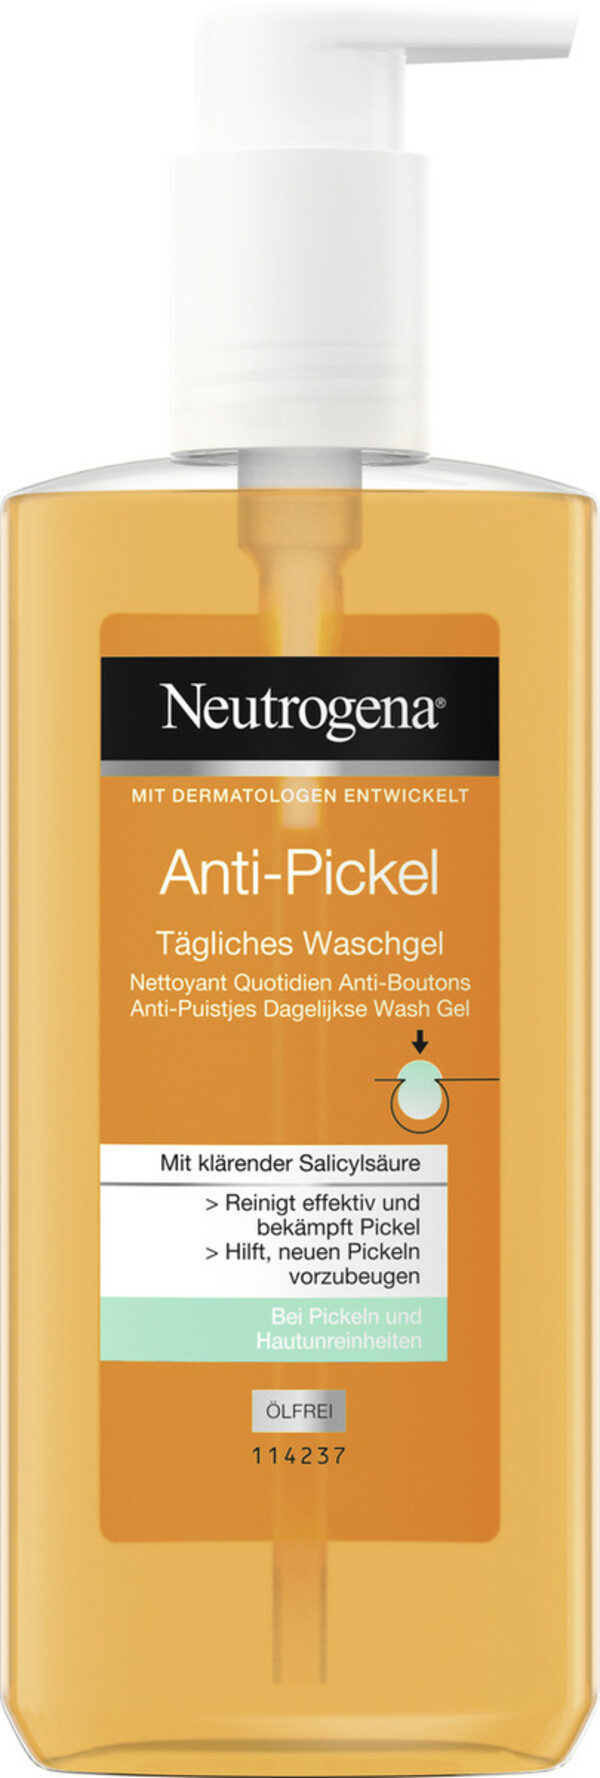 Bild 1 von Neutrogena Anti-Pickel Tägliches Waschgel 200ML